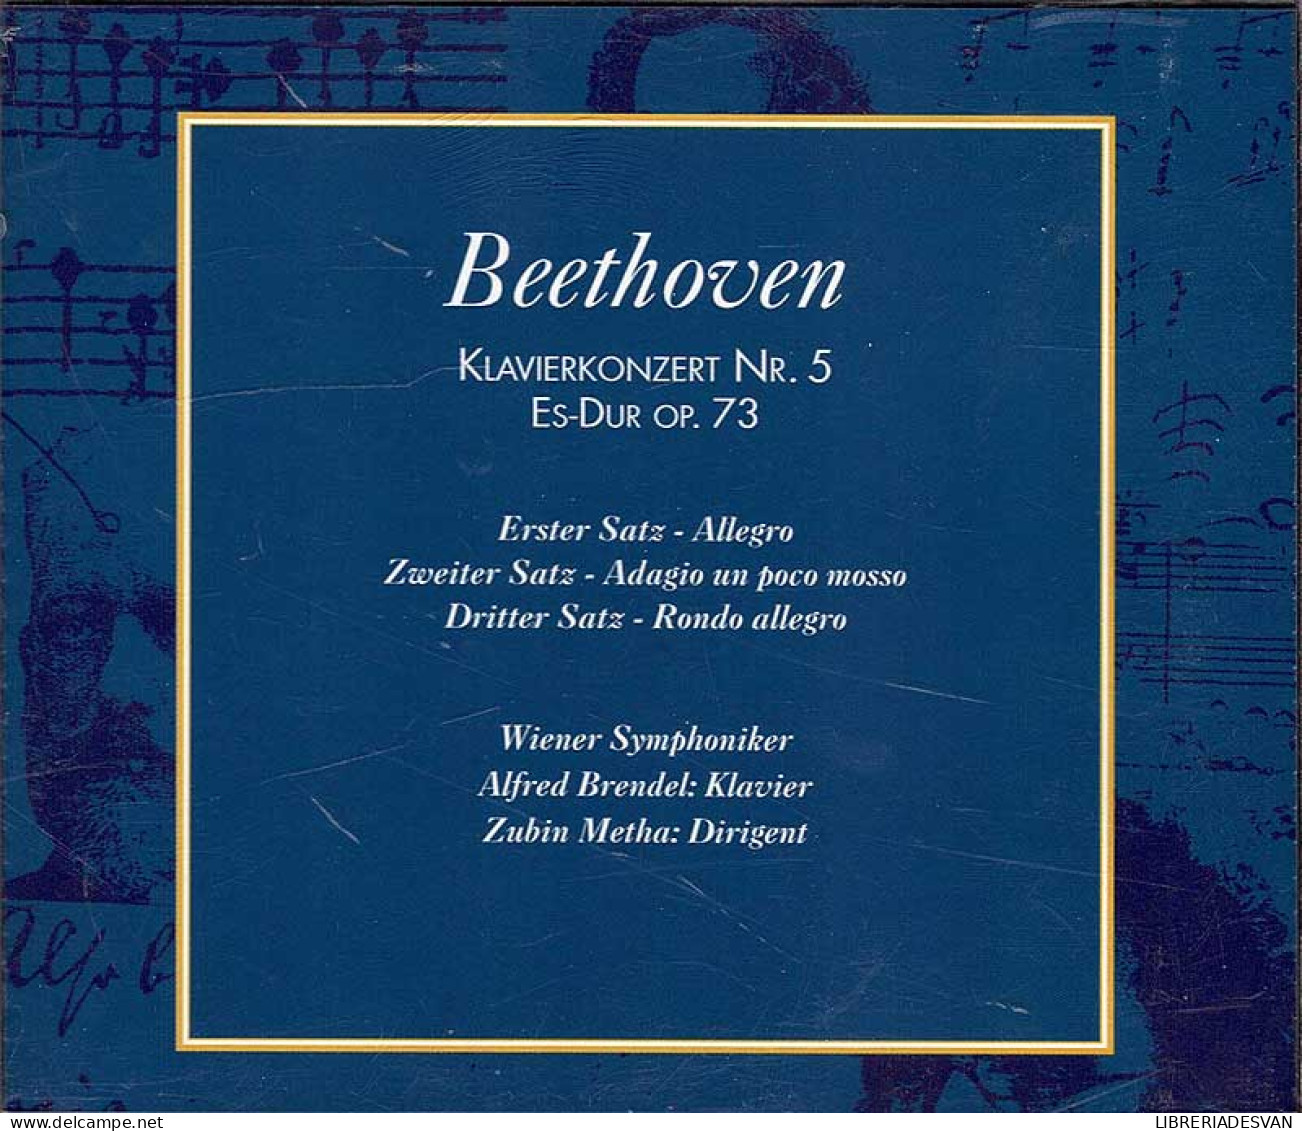 Beethoven - Klavierkonzert No. 5 Es-Dur Opus 73. CD - Clásica